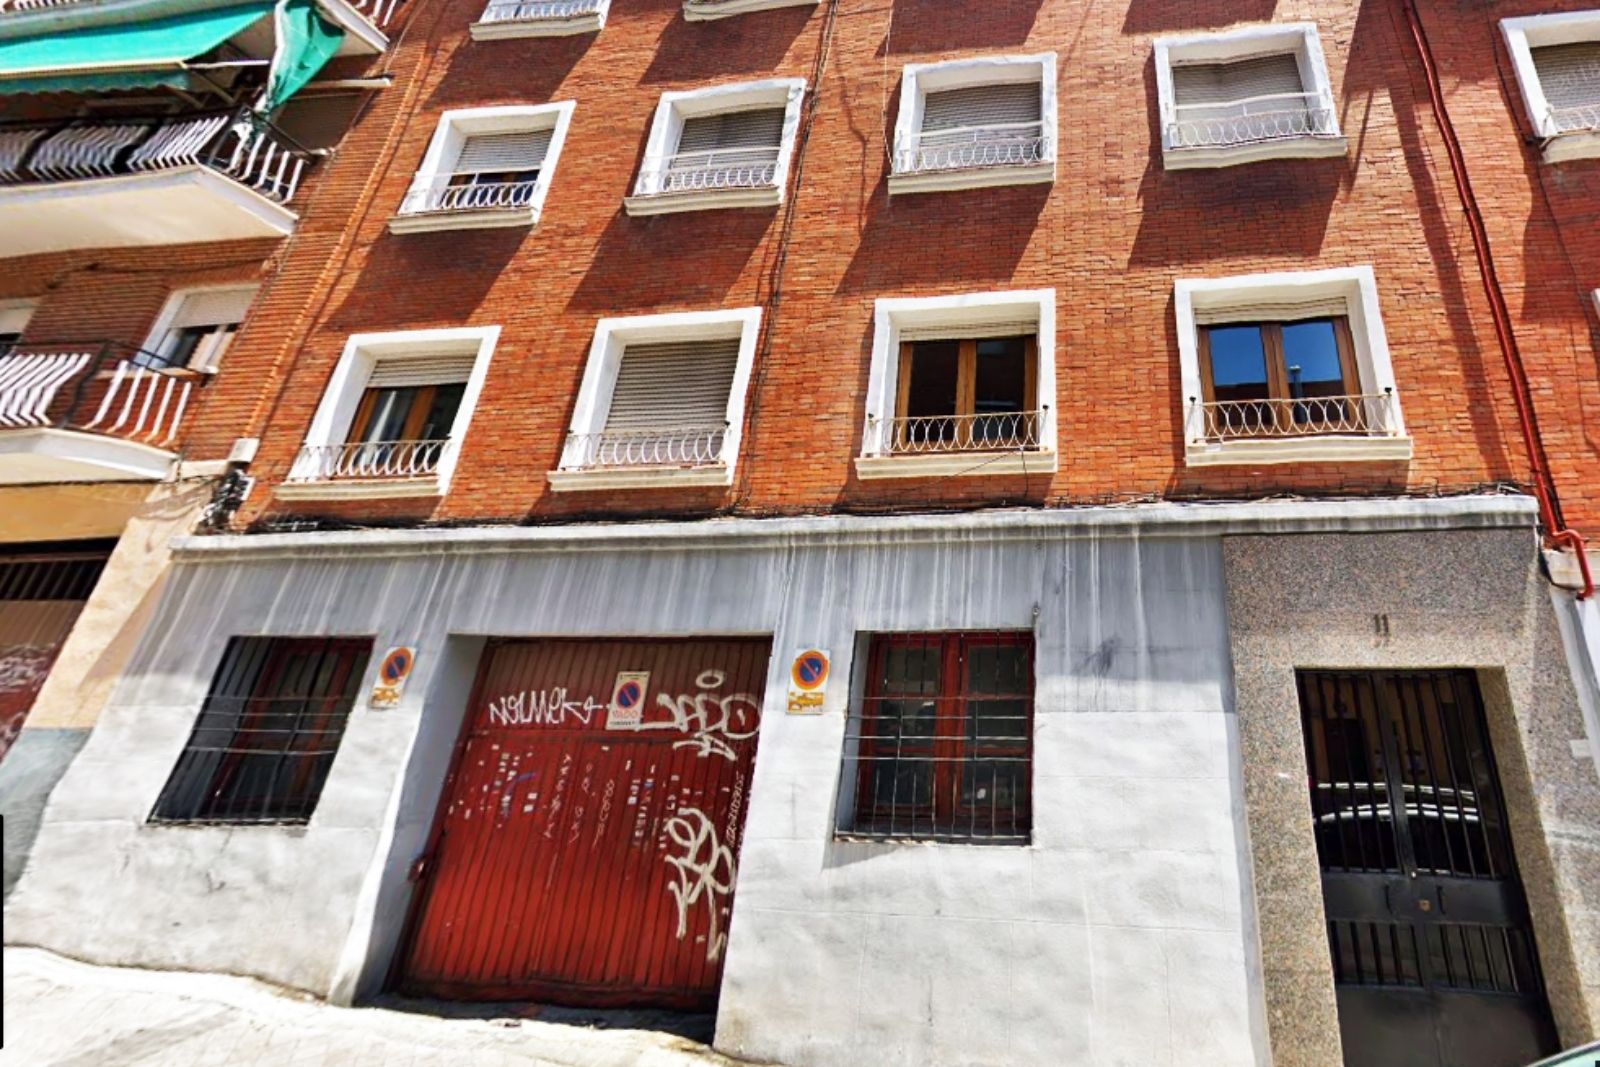 Agencia Astorga vende un espacio mixto con local comercial y vivienda en Usera